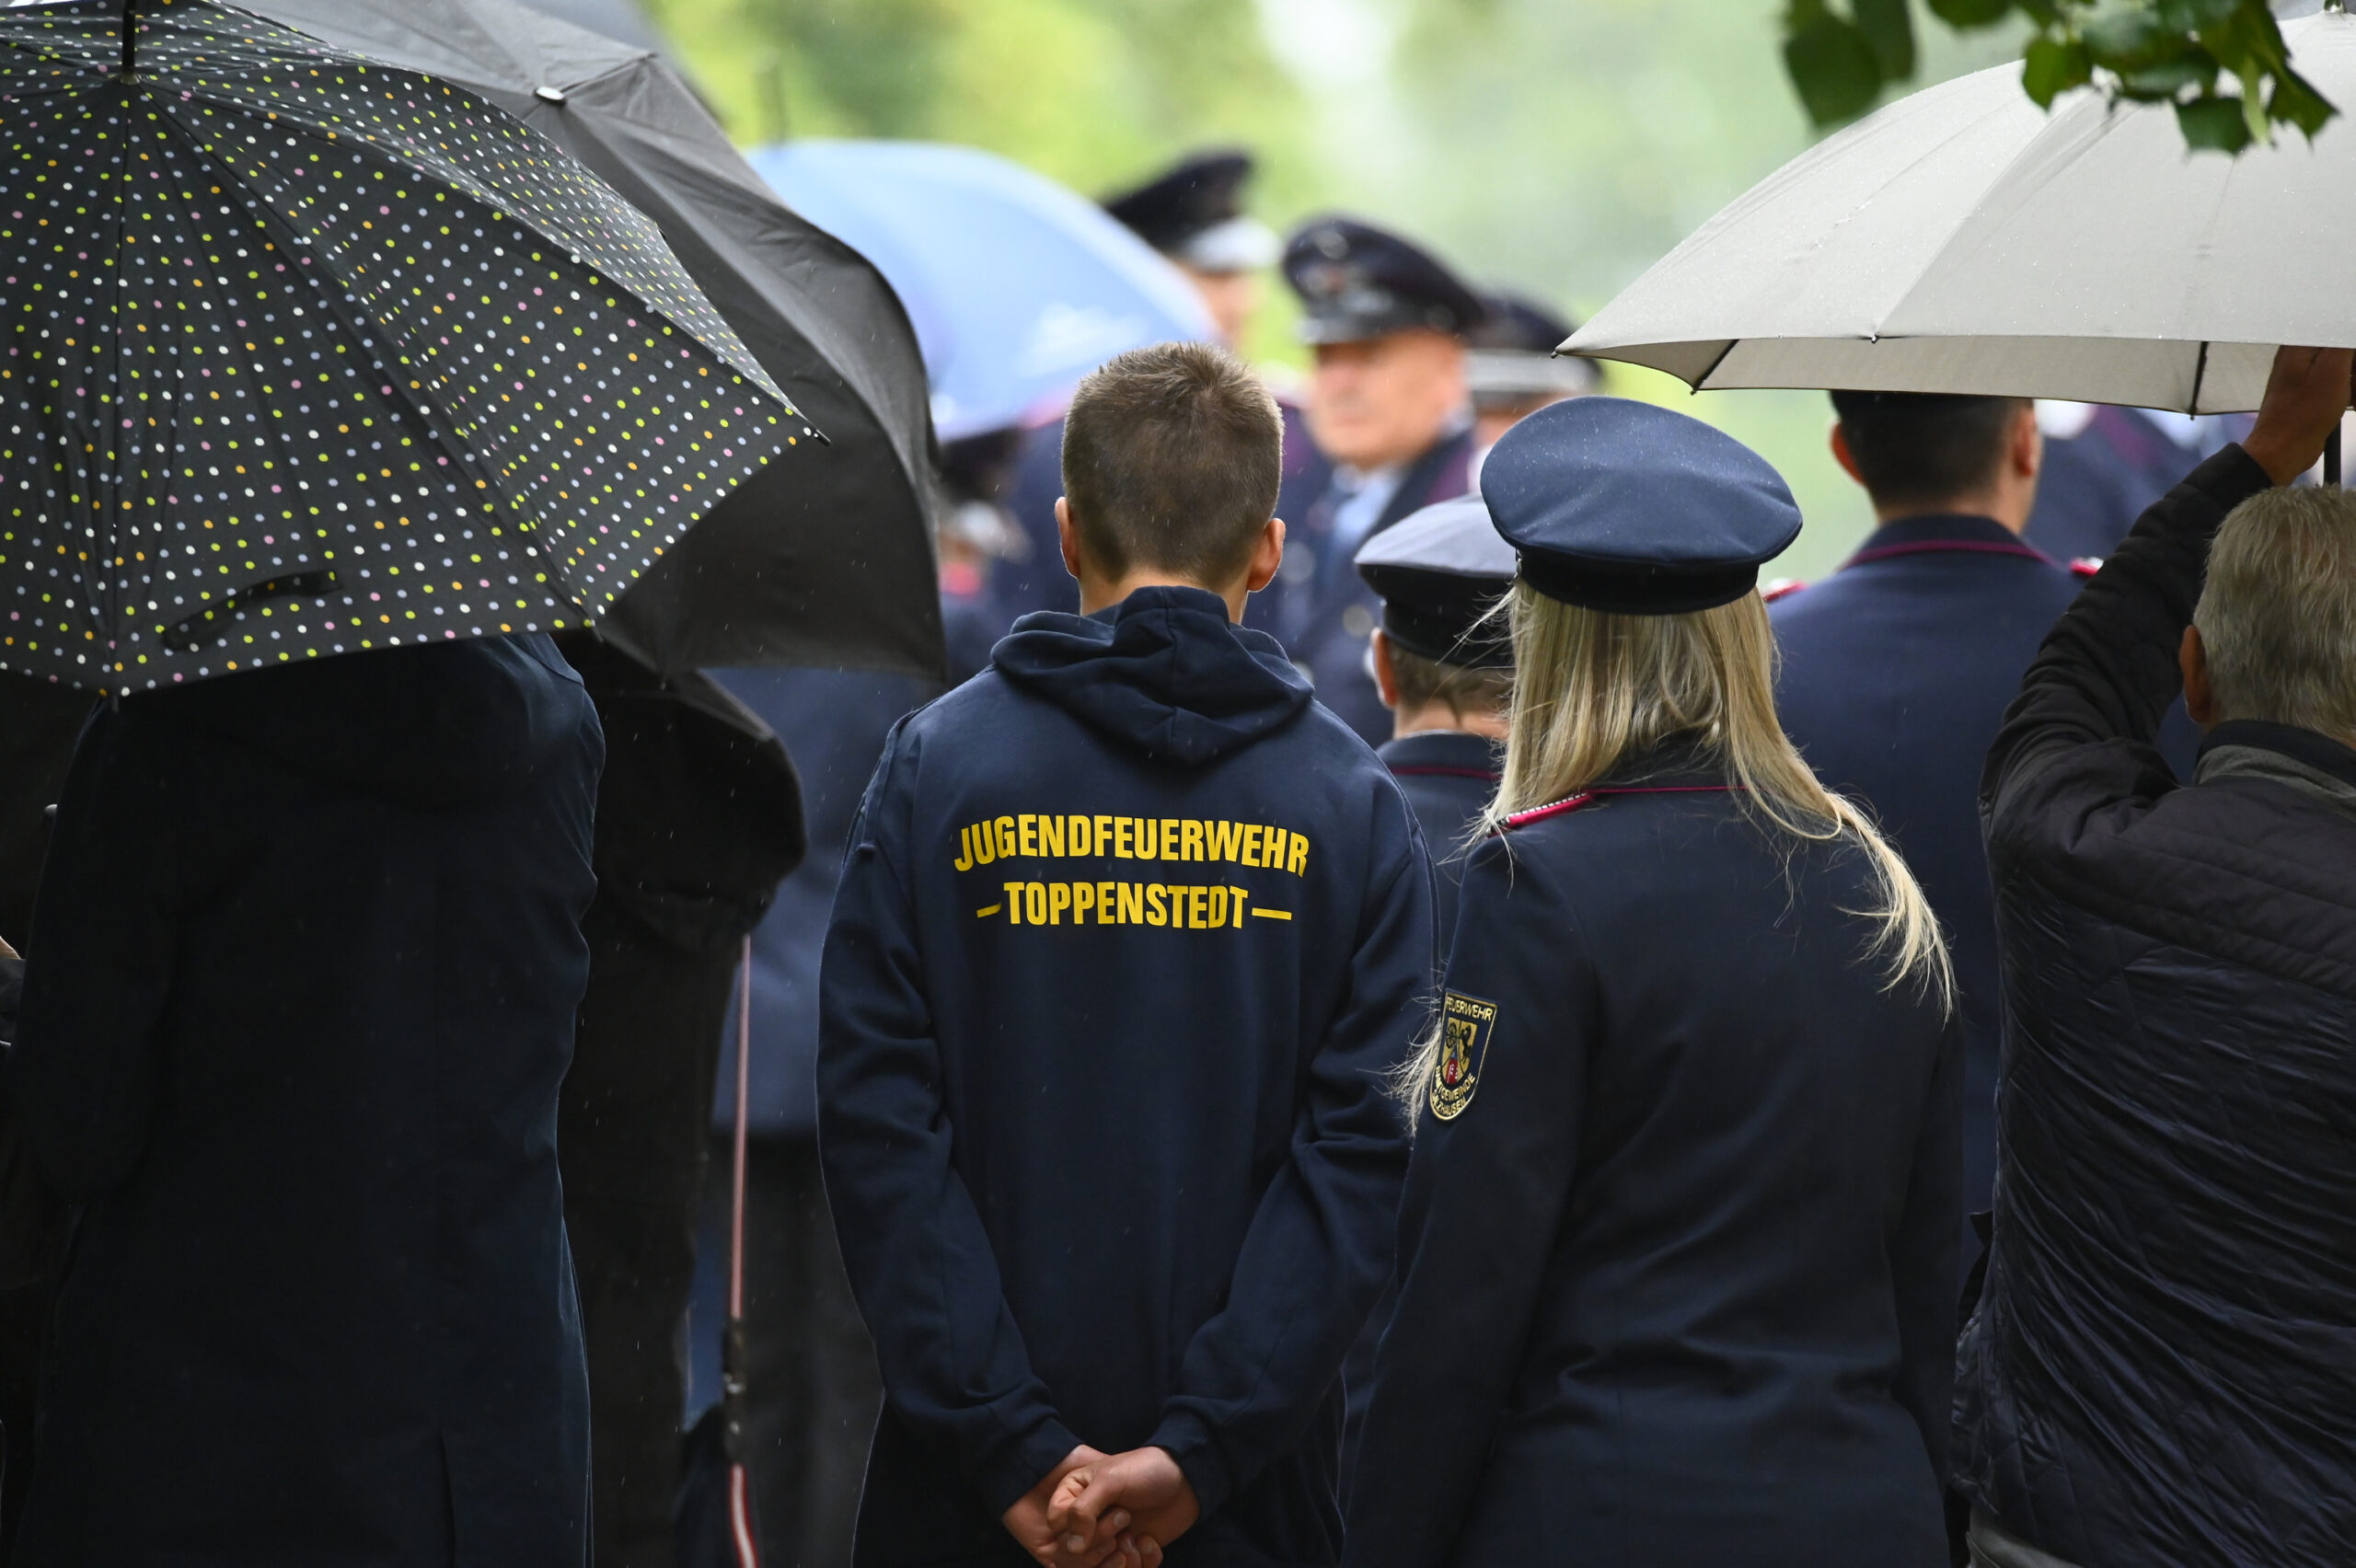 Vor dem Gottesdienst: „Jugendfeuerwehr Toppenstedt“ steht auf dem Pullover eines Jugendlichen.